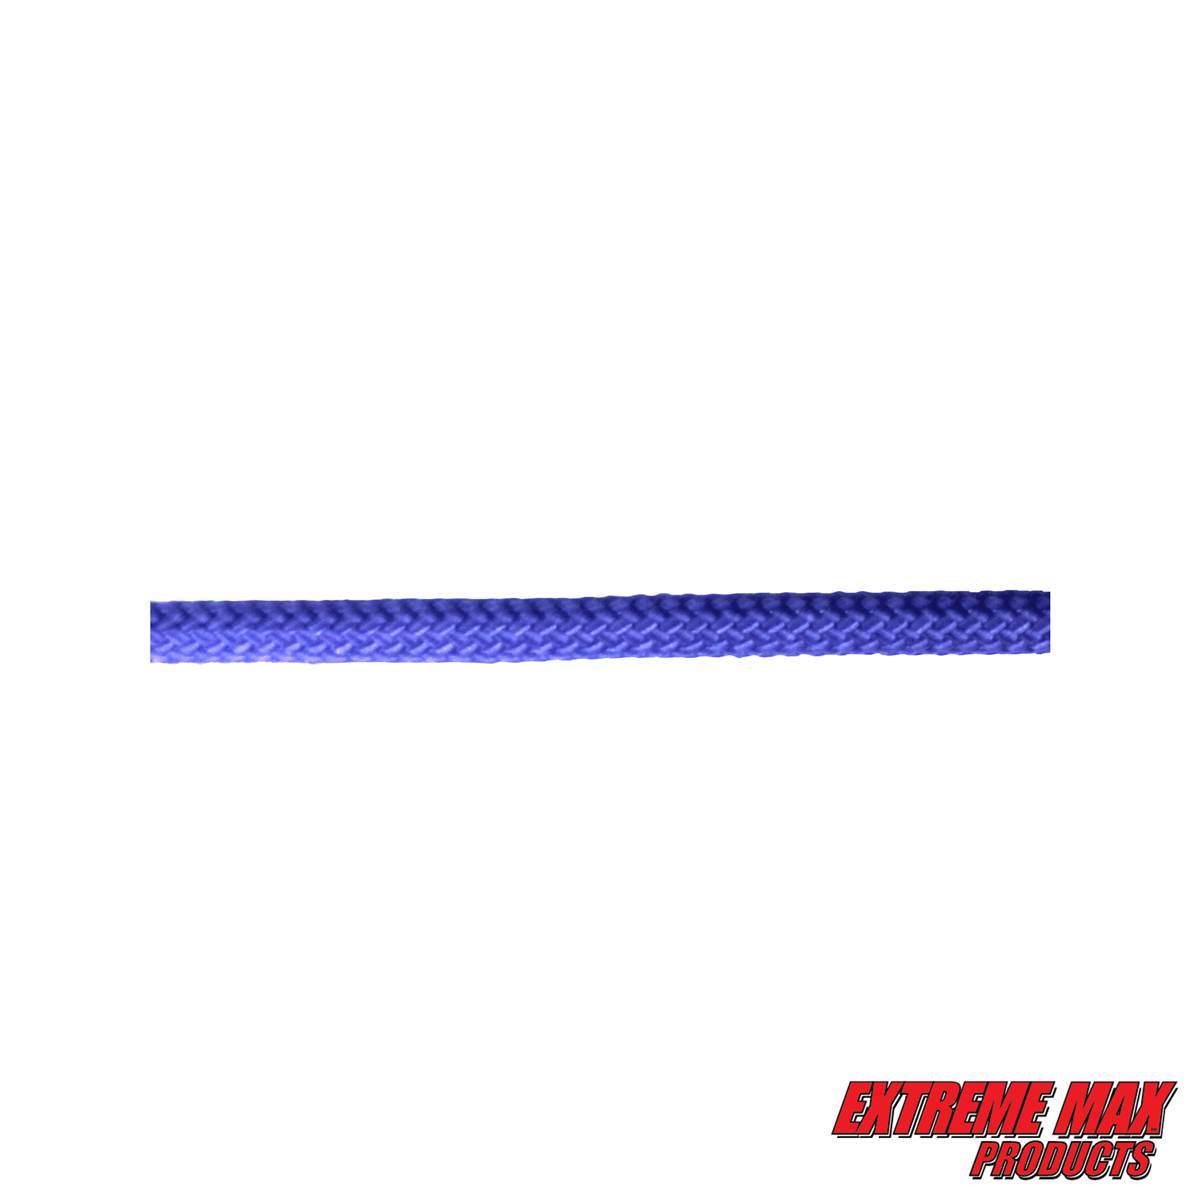 Extreme Max 3008.0273 Blue 3/8 x 25 16-Strand Diamond Braid Utility Rope 